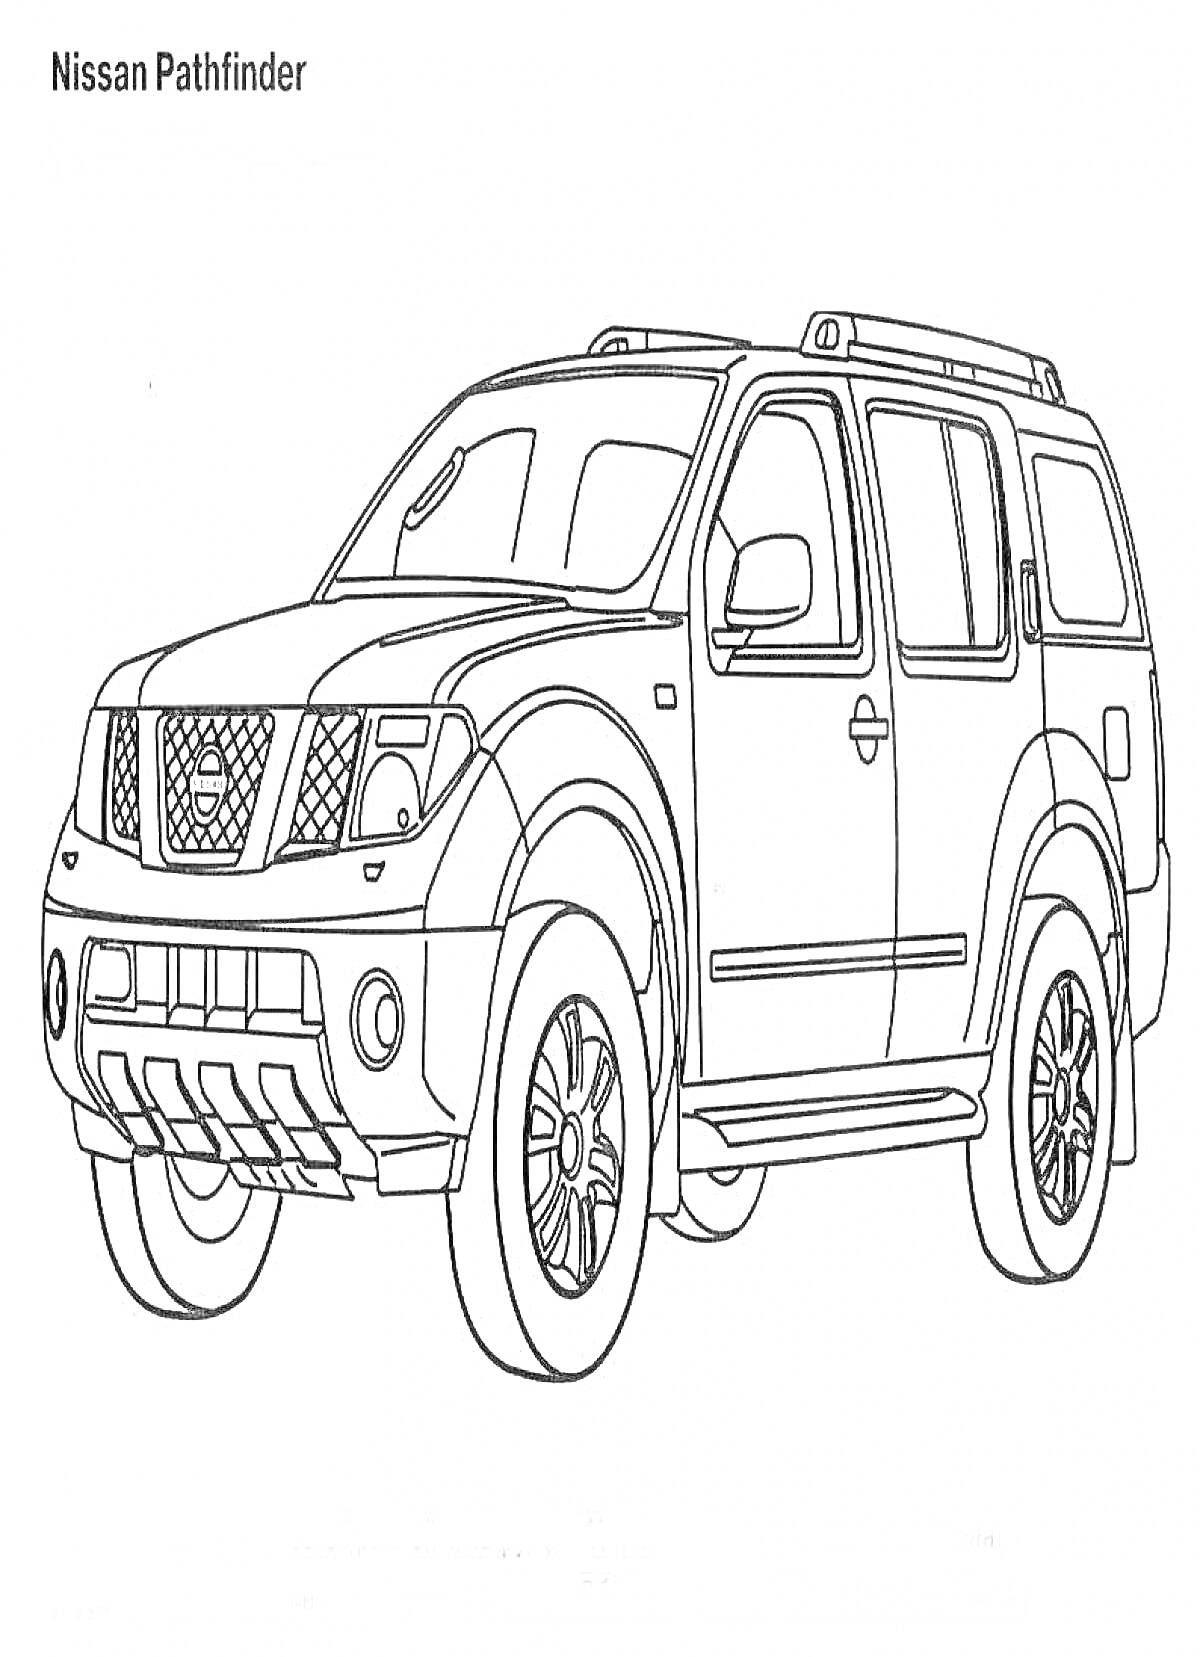 Раскраска Nissan Pathfinder, внедорожник с четырьмя дверями, решетка радиатора, зеркала, колеса, ручки на крыше, фары